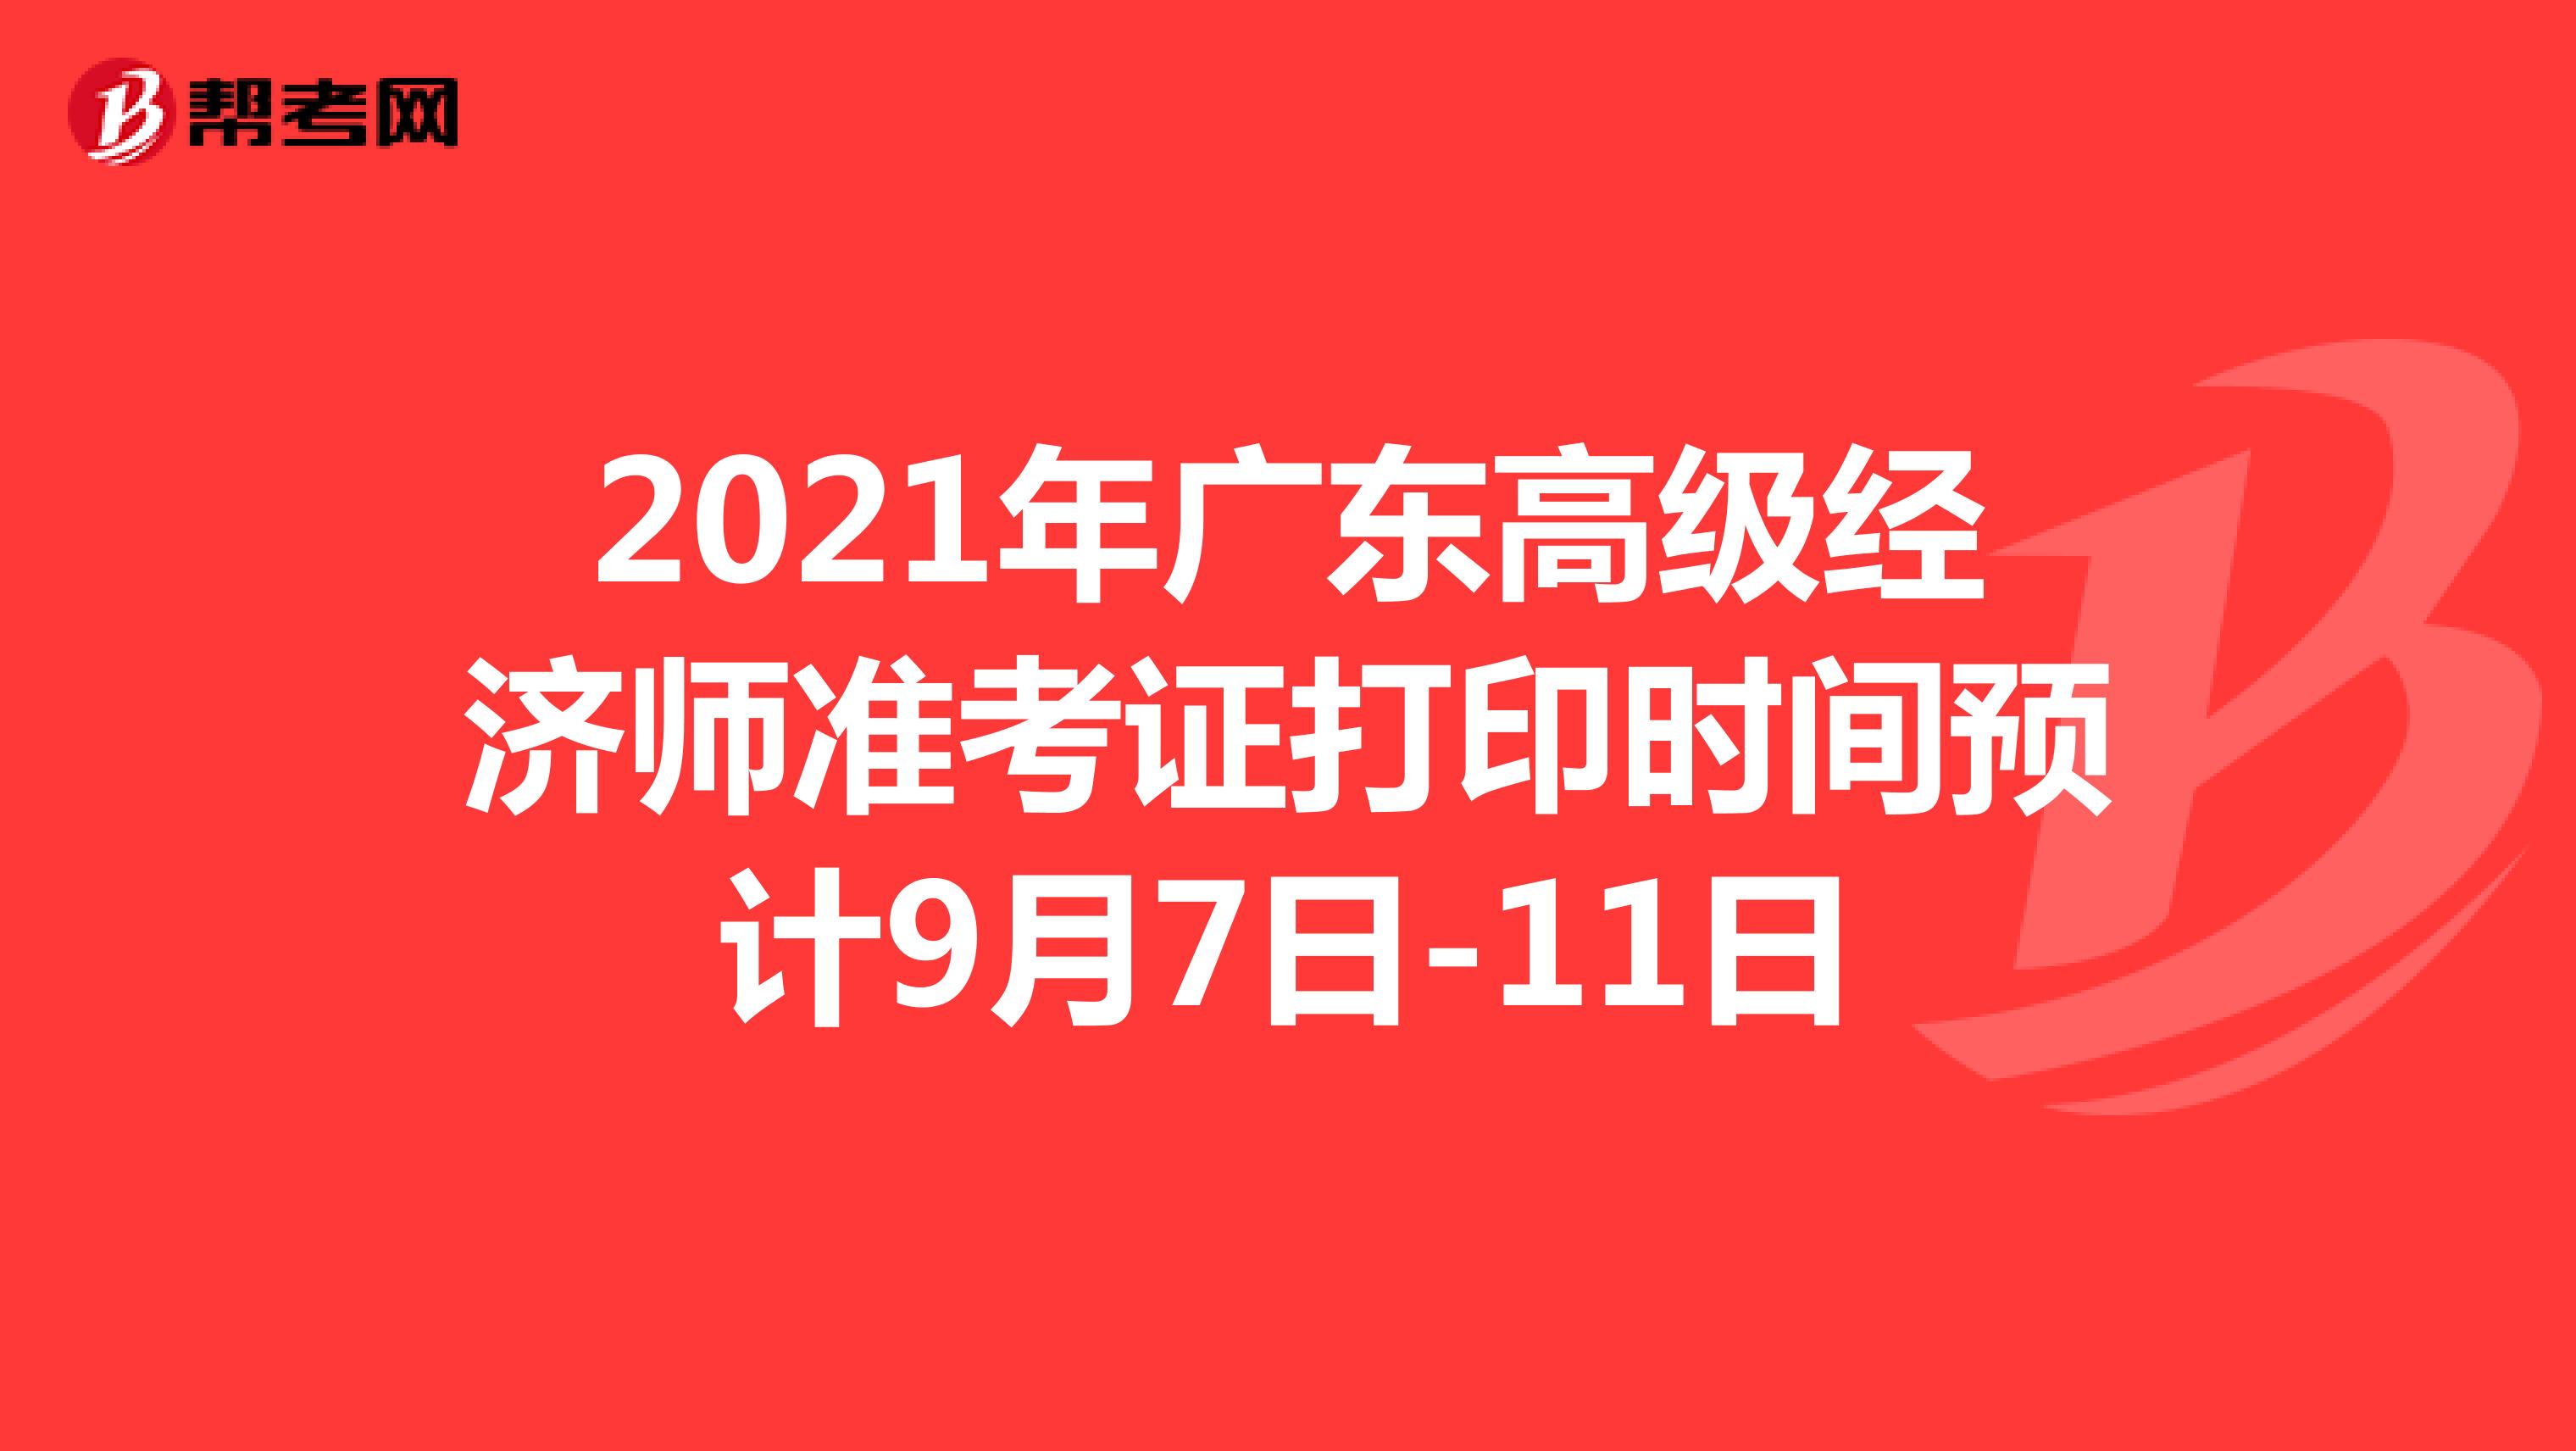 2021年广东高级经济师准考证打印时间预计9月7日-11日